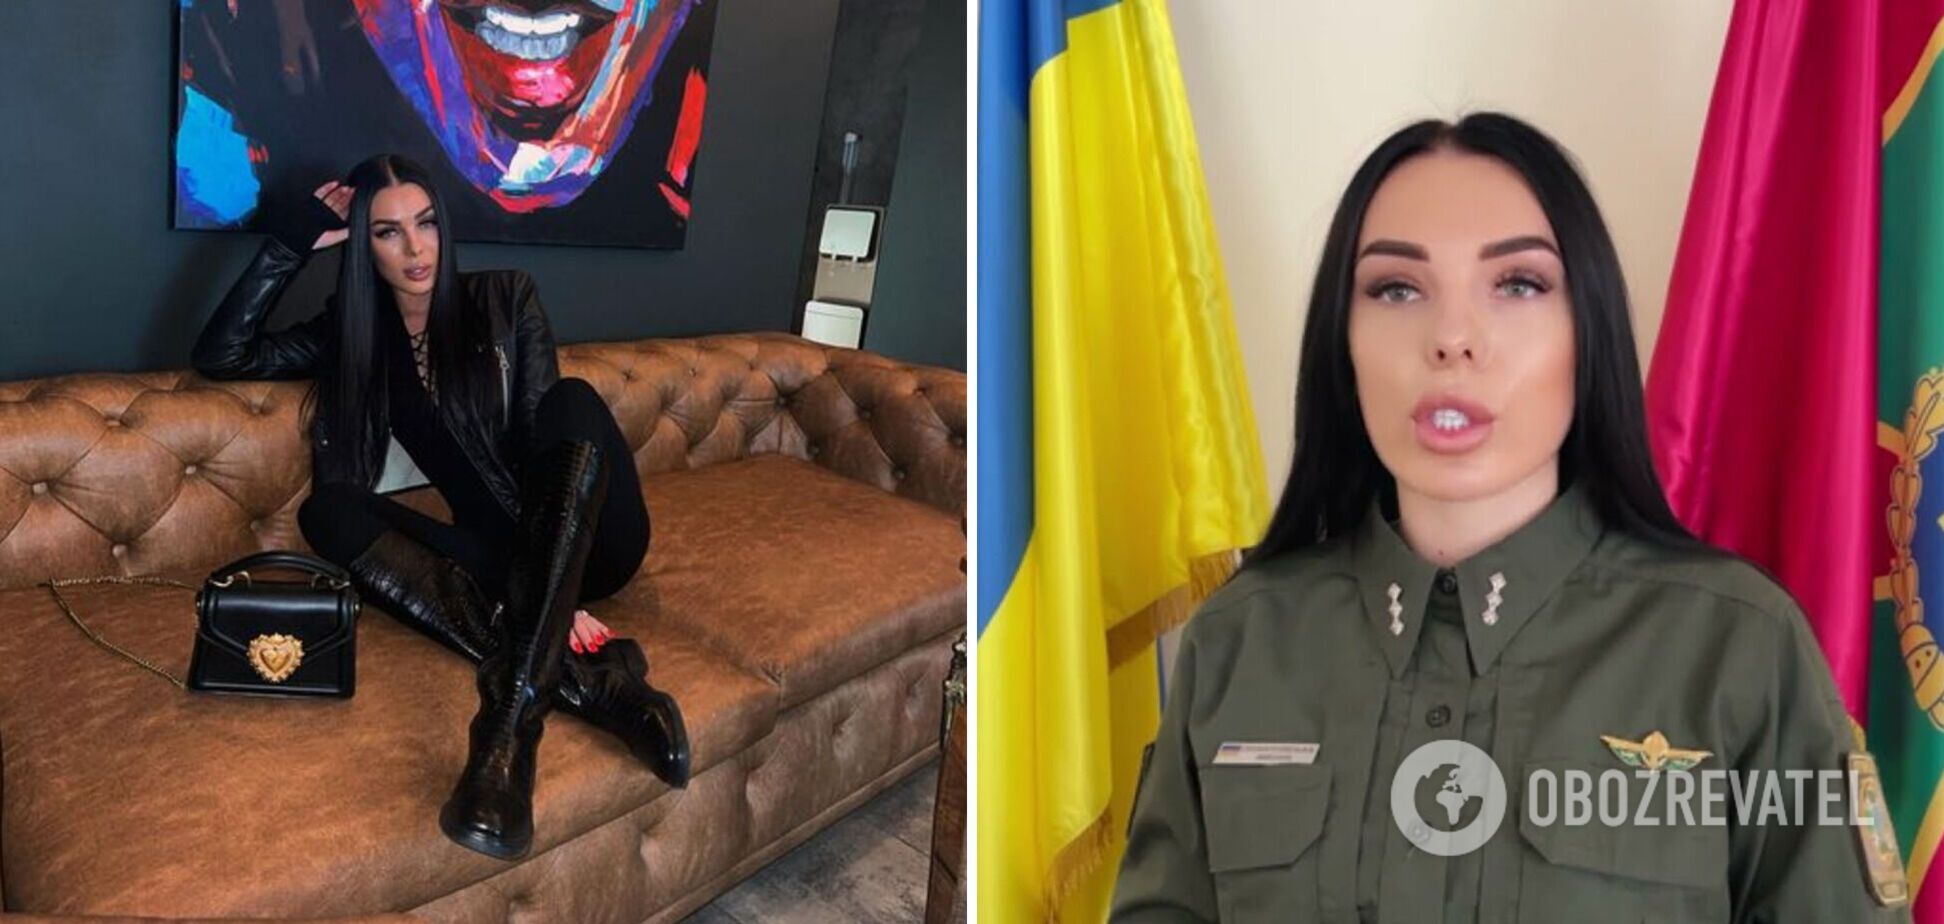 Пресс-офицер ГПСУ Плантовская похвасталась новым 'гламурным' фото и разозлила украинцев